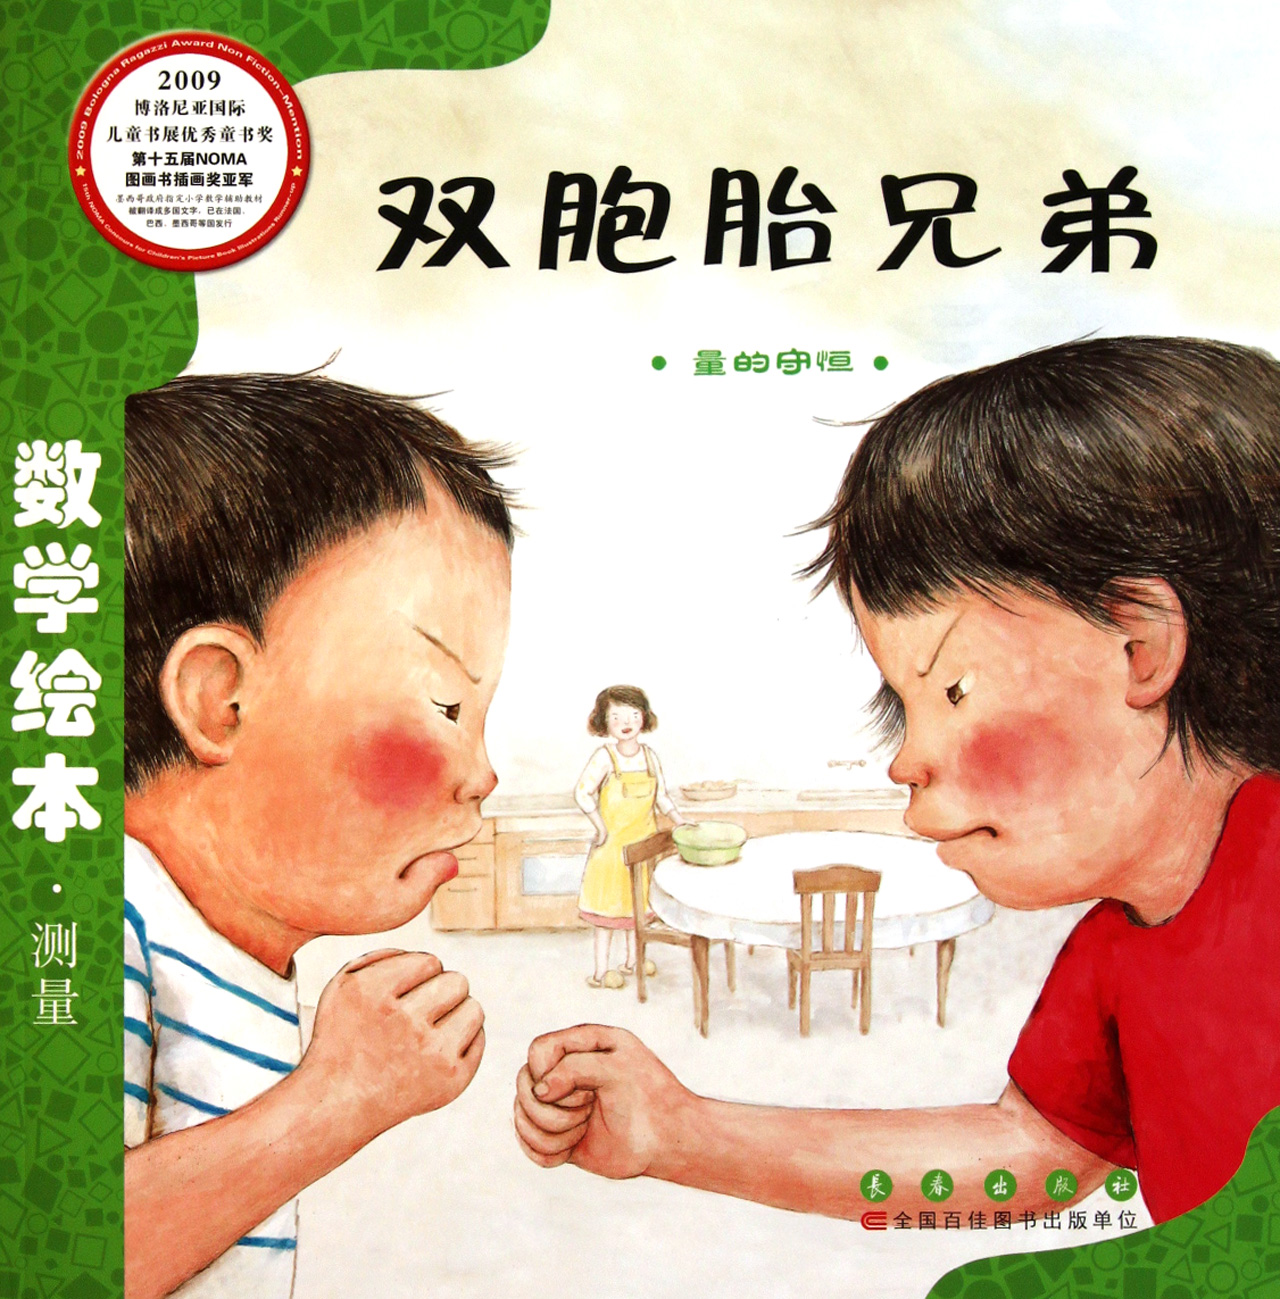 雙胞胎兄弟(劉永昭2009年出版圖書)